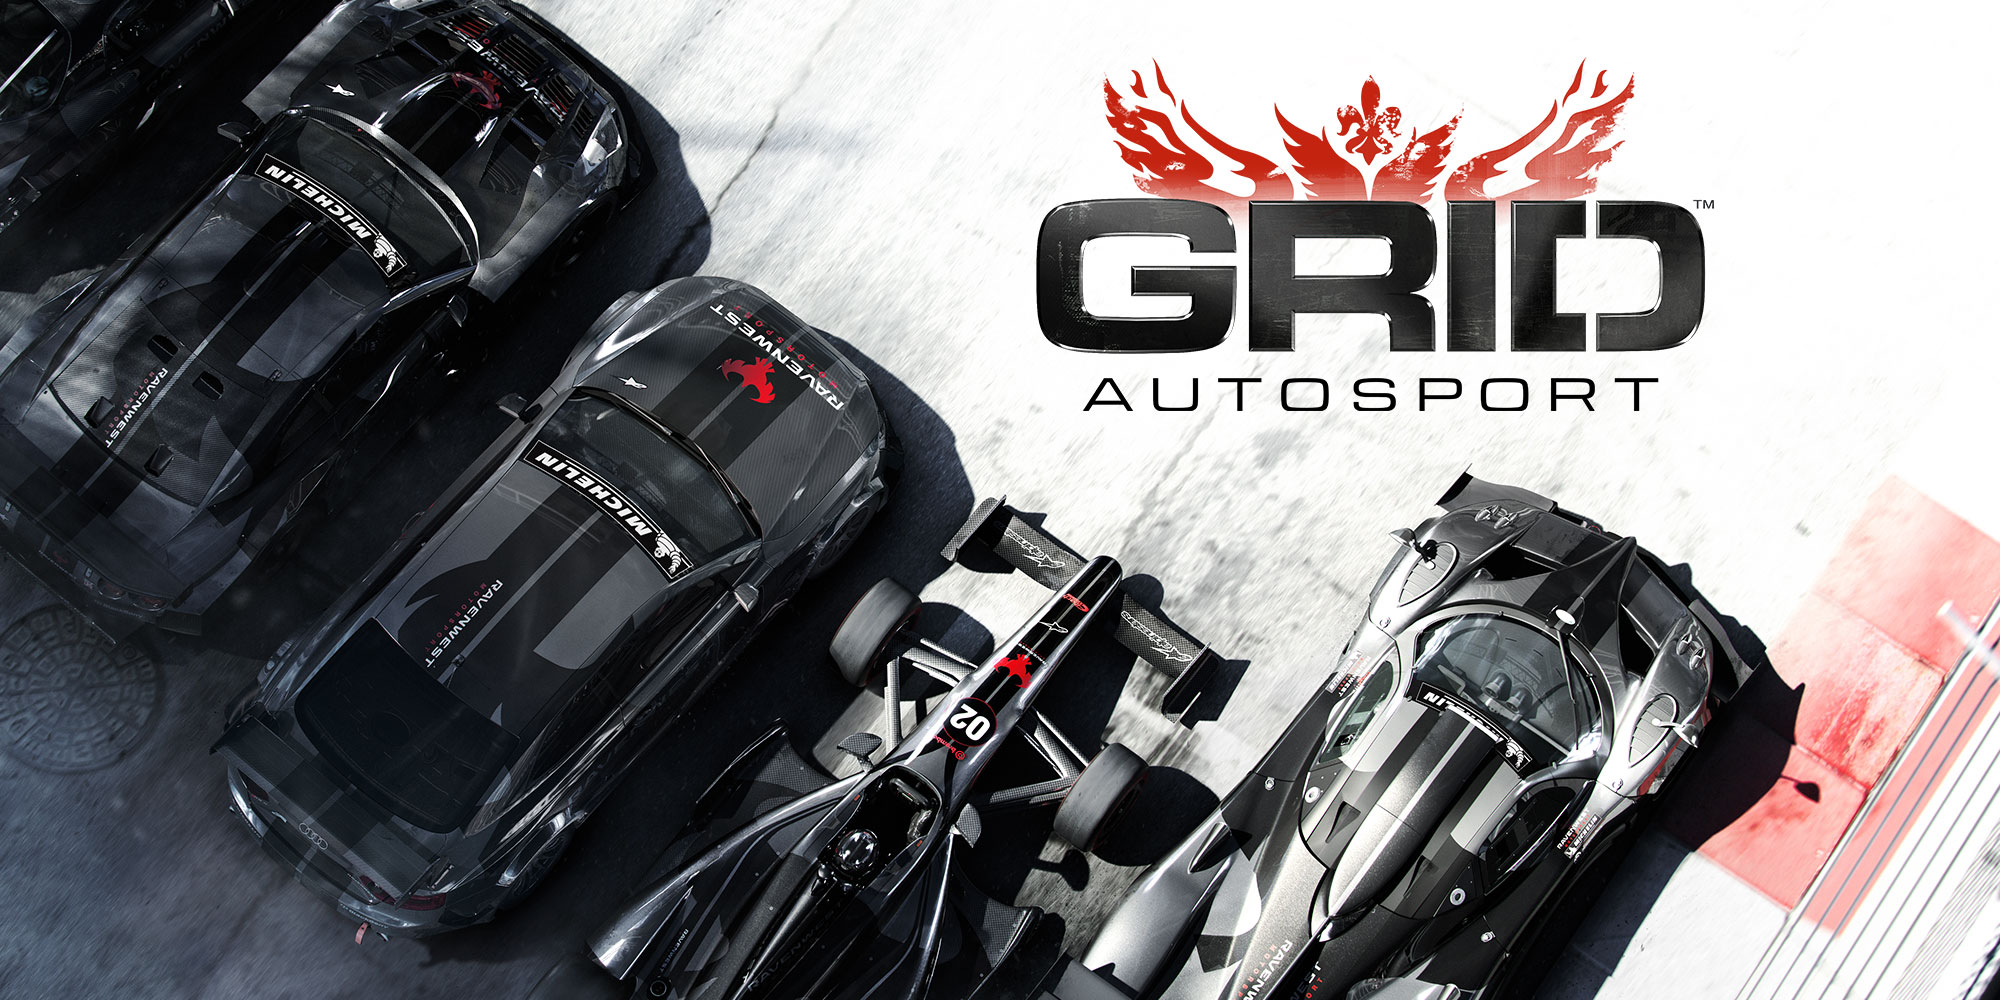 Grid: Autosport Reviews, Pros and Cons